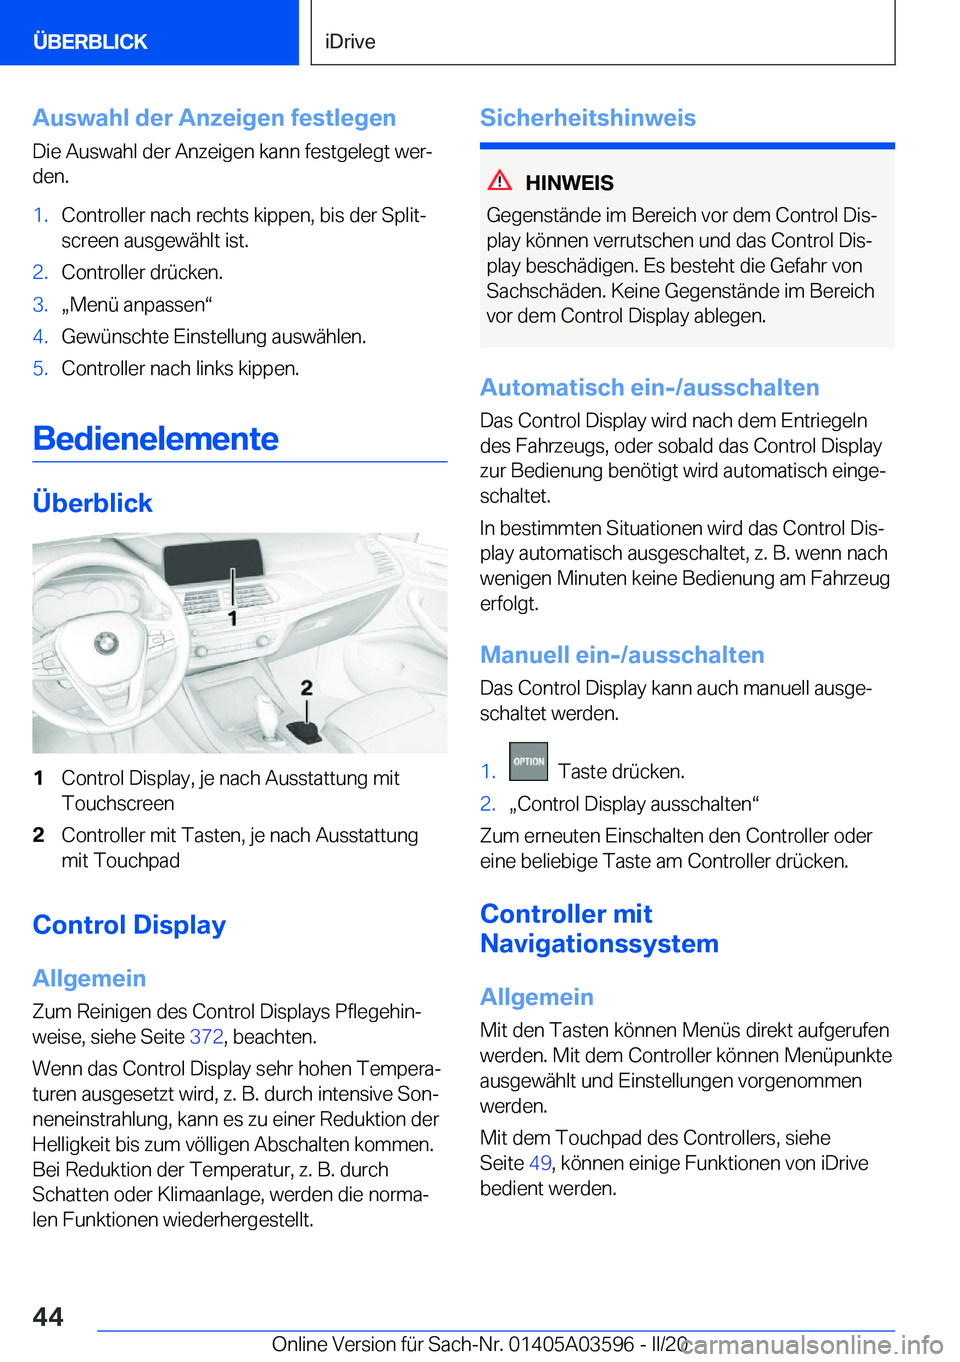 BMW X4 2020  Betriebsanleitungen (in German) �A�u�s�w�a�h�l��d�e�r��A�n�z�e�i�g�e�n��f�e�s�t�l�e�g�e�n�D�i�e��A�u�s�w�a�h�l��d�e�r��A�n�z�e�i�g�e�n��k�a�n�n��f�e�s�t�g�e�l�e�g�t��w�e�rj
�d�e�n�.�1�.�C�o�n�t�r�o�l�l�e�r��n�a�c�h��r�e�